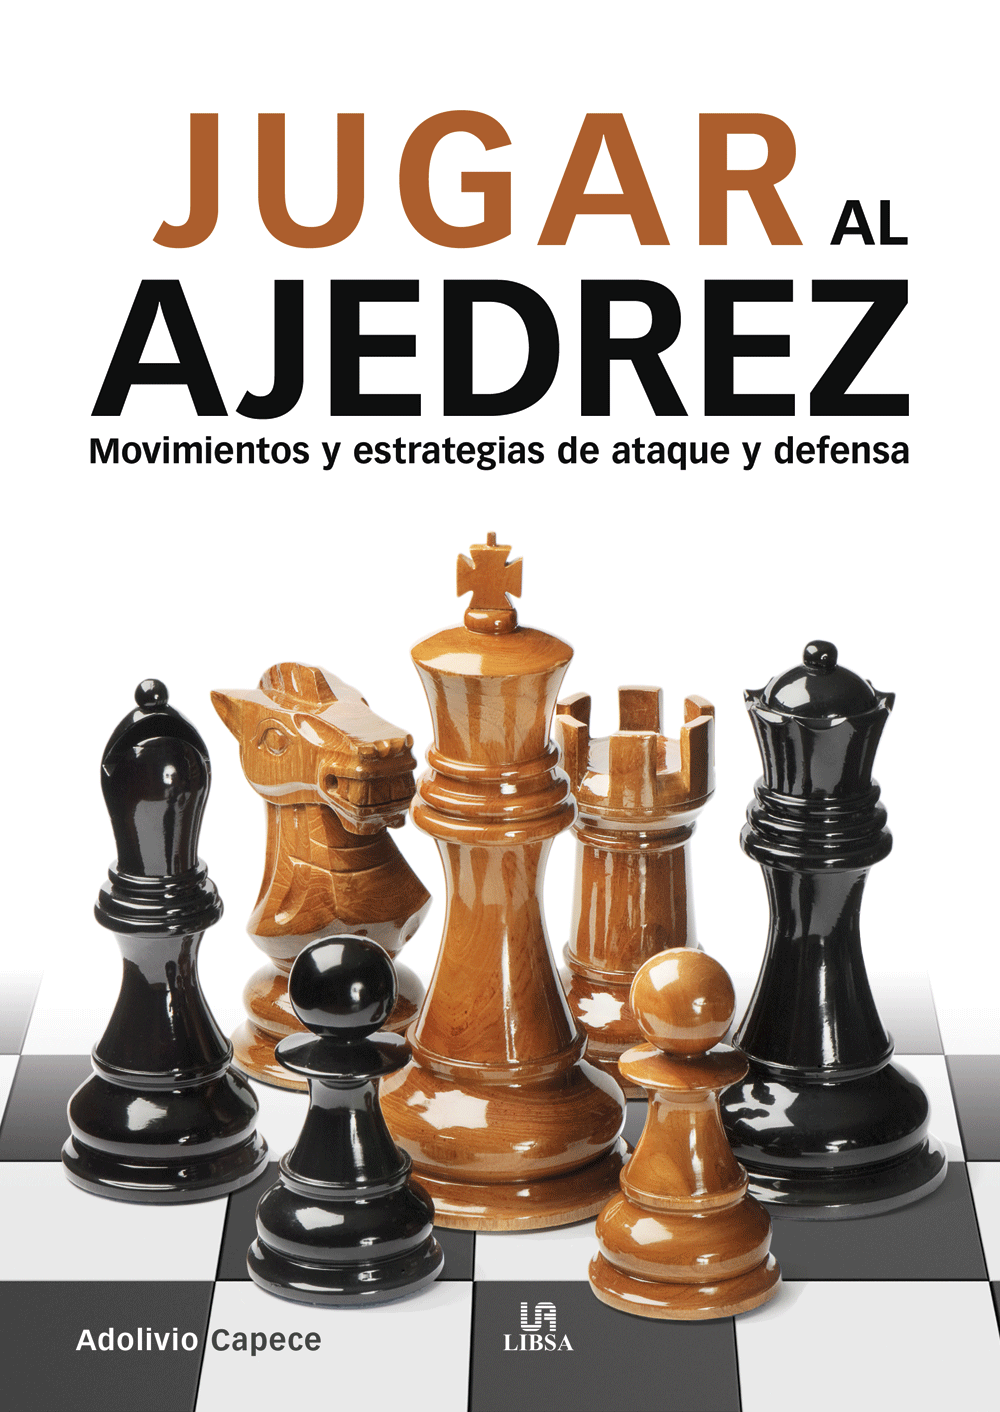 Club de Ajedrez de Benalmadena – Jugar, competir y aprender en el Ajedrez